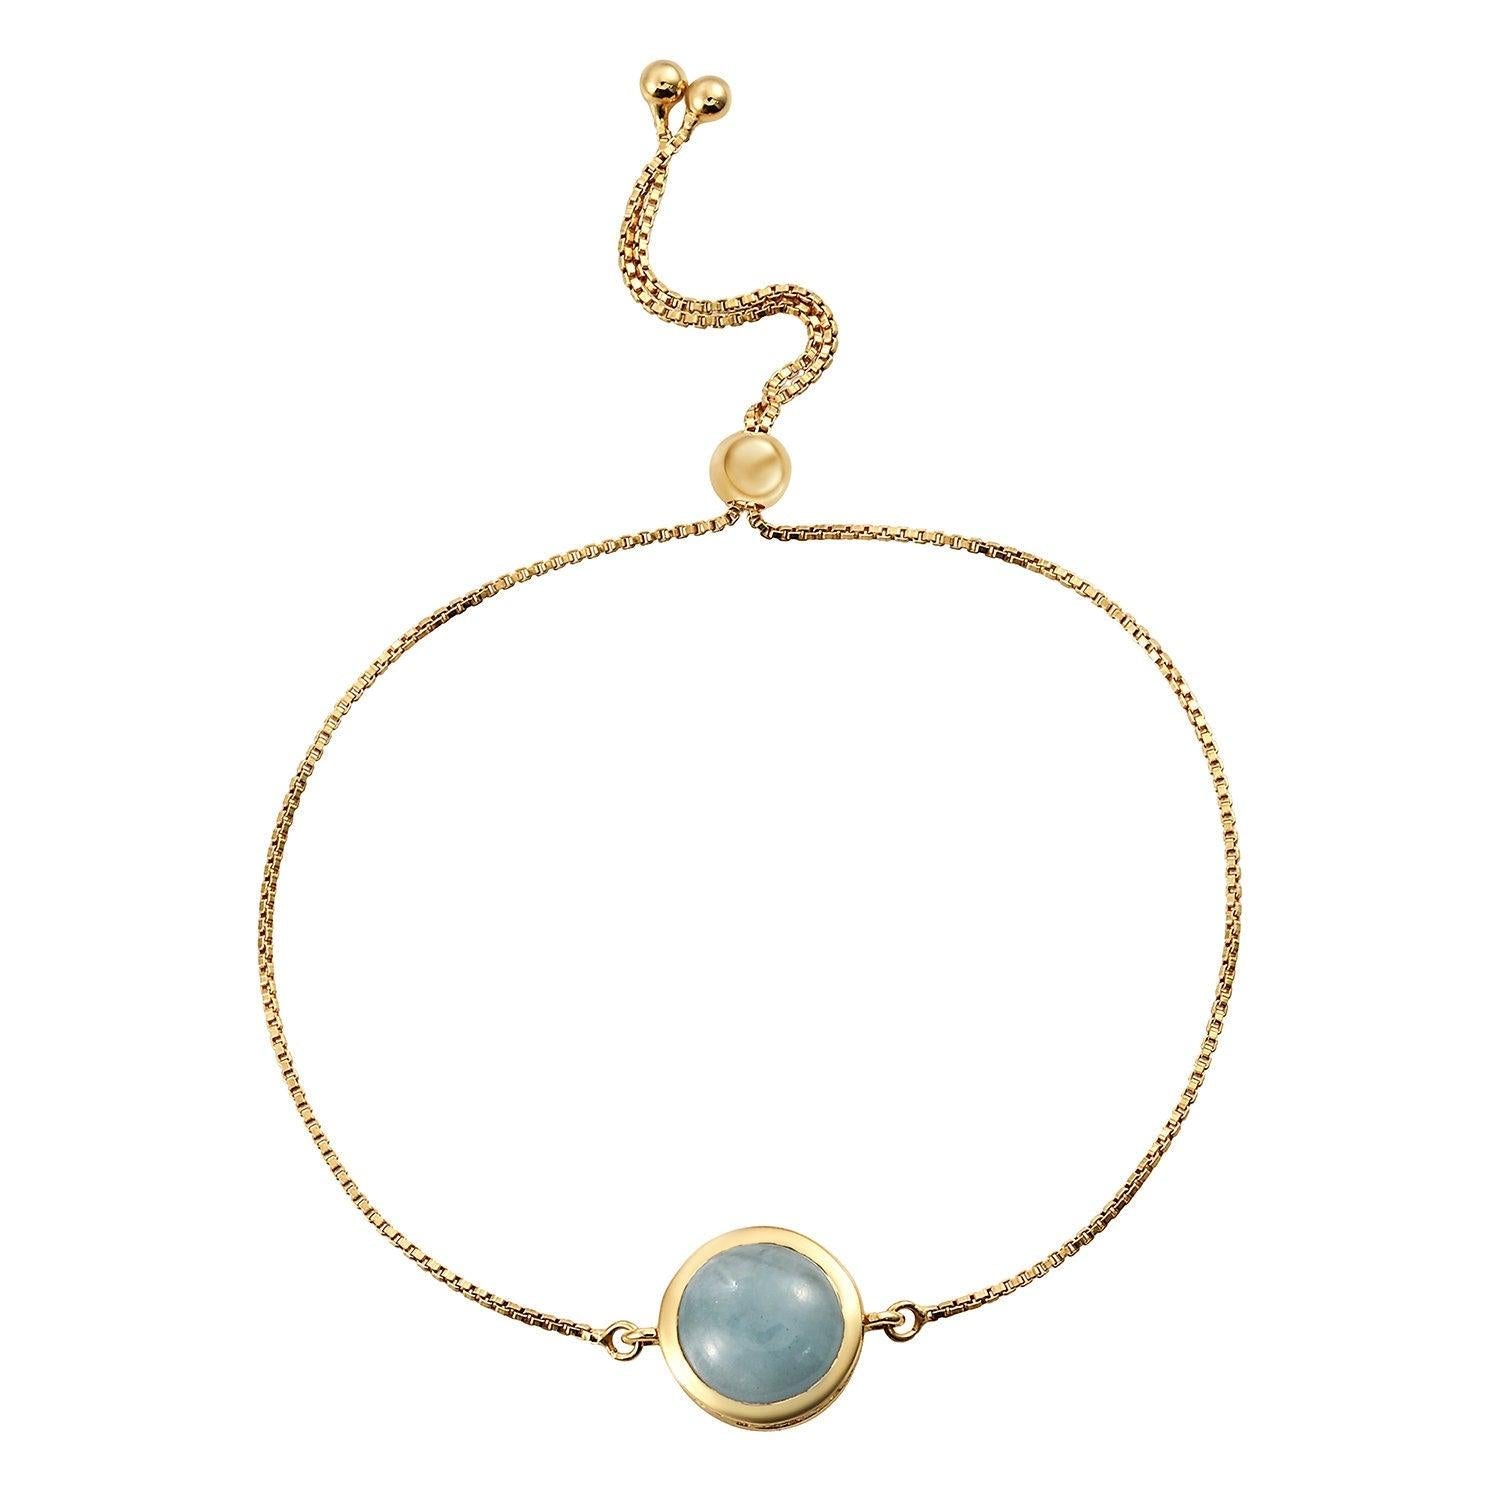 Aquamarine Bracelet | Throat Chakra Bracelet | 925 Sterling Silver Bracelet | Bracelet for Women | Gift for her - Inspiring Jewellery